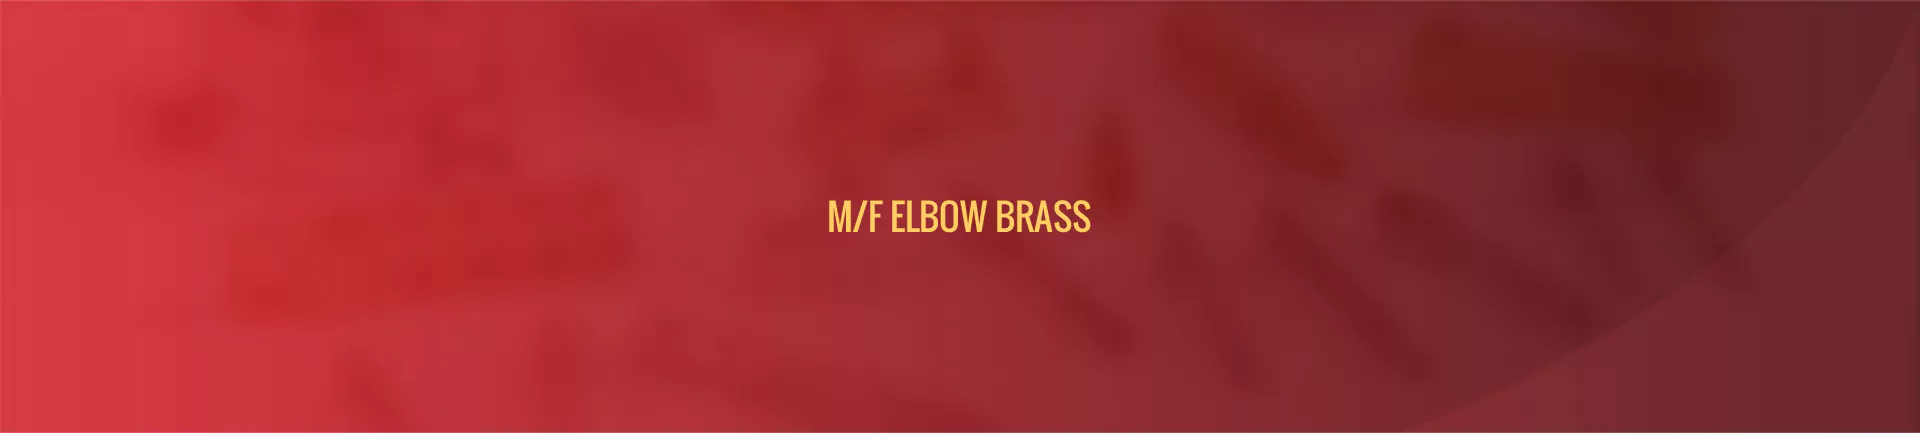 brass_m-f_elbow_brass-banner